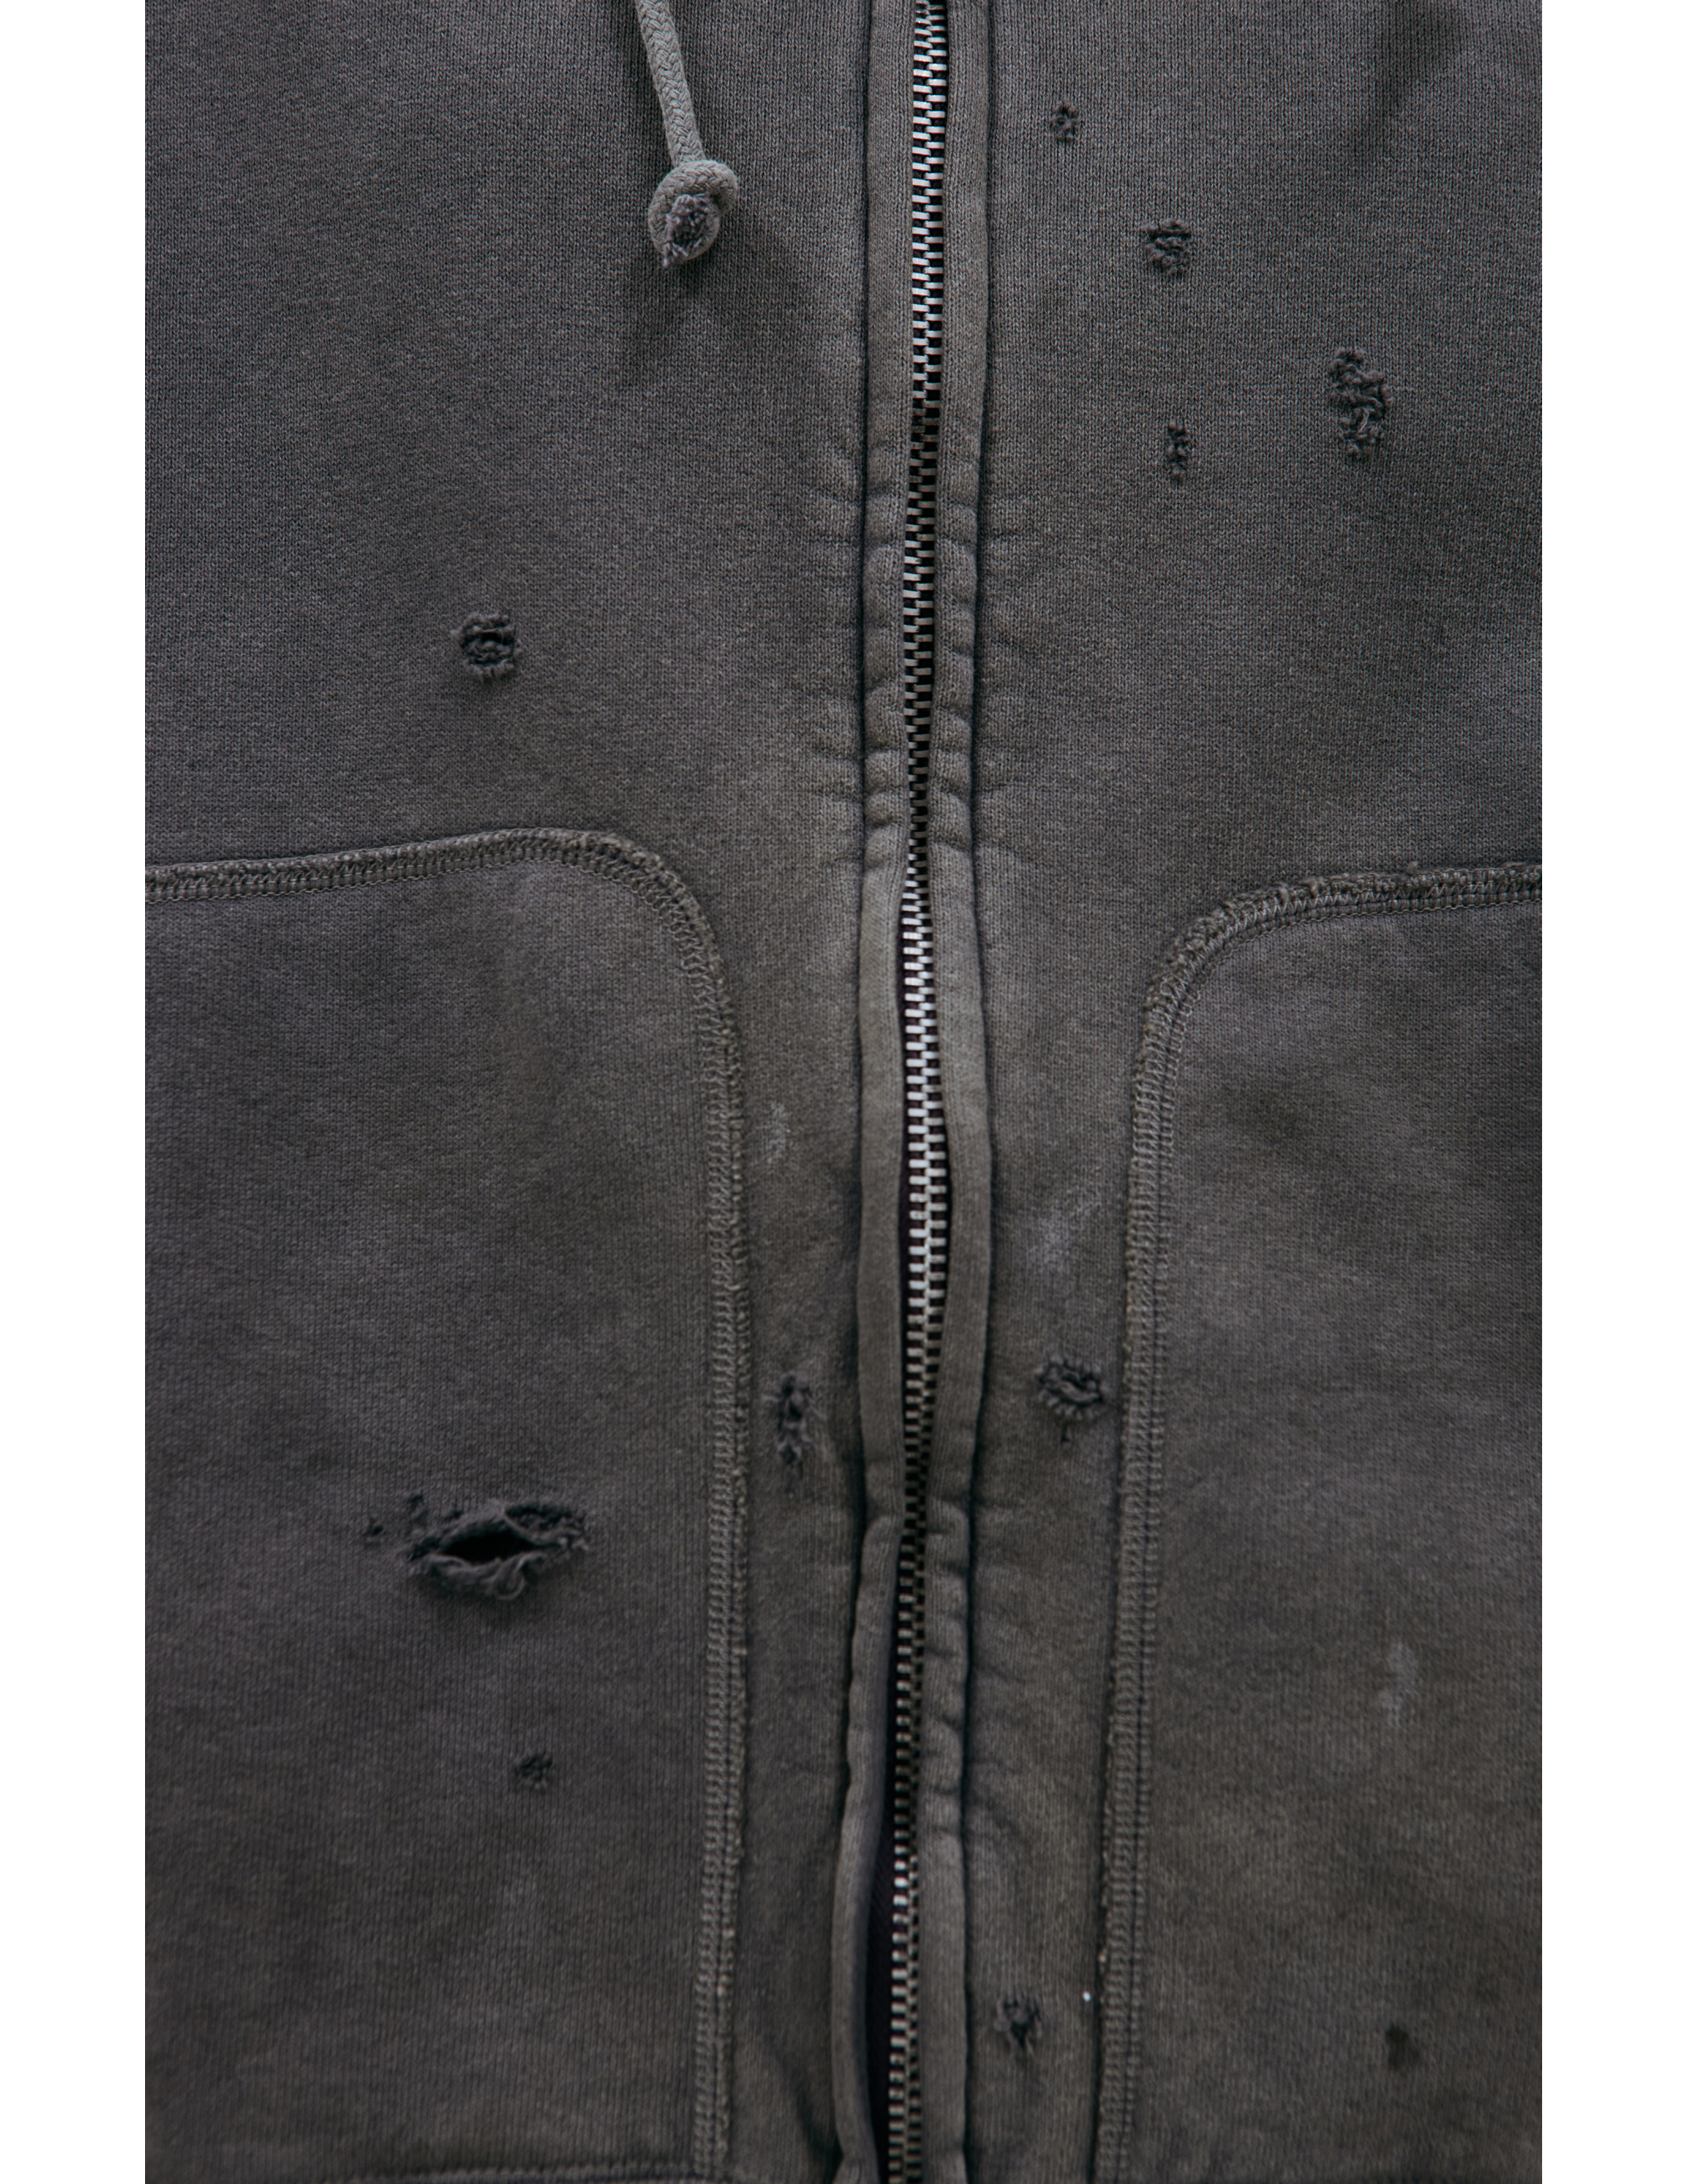 Рваный худи на молнии Saint Michael SM-A23-0000-032, размер M;L;XL - фото 5